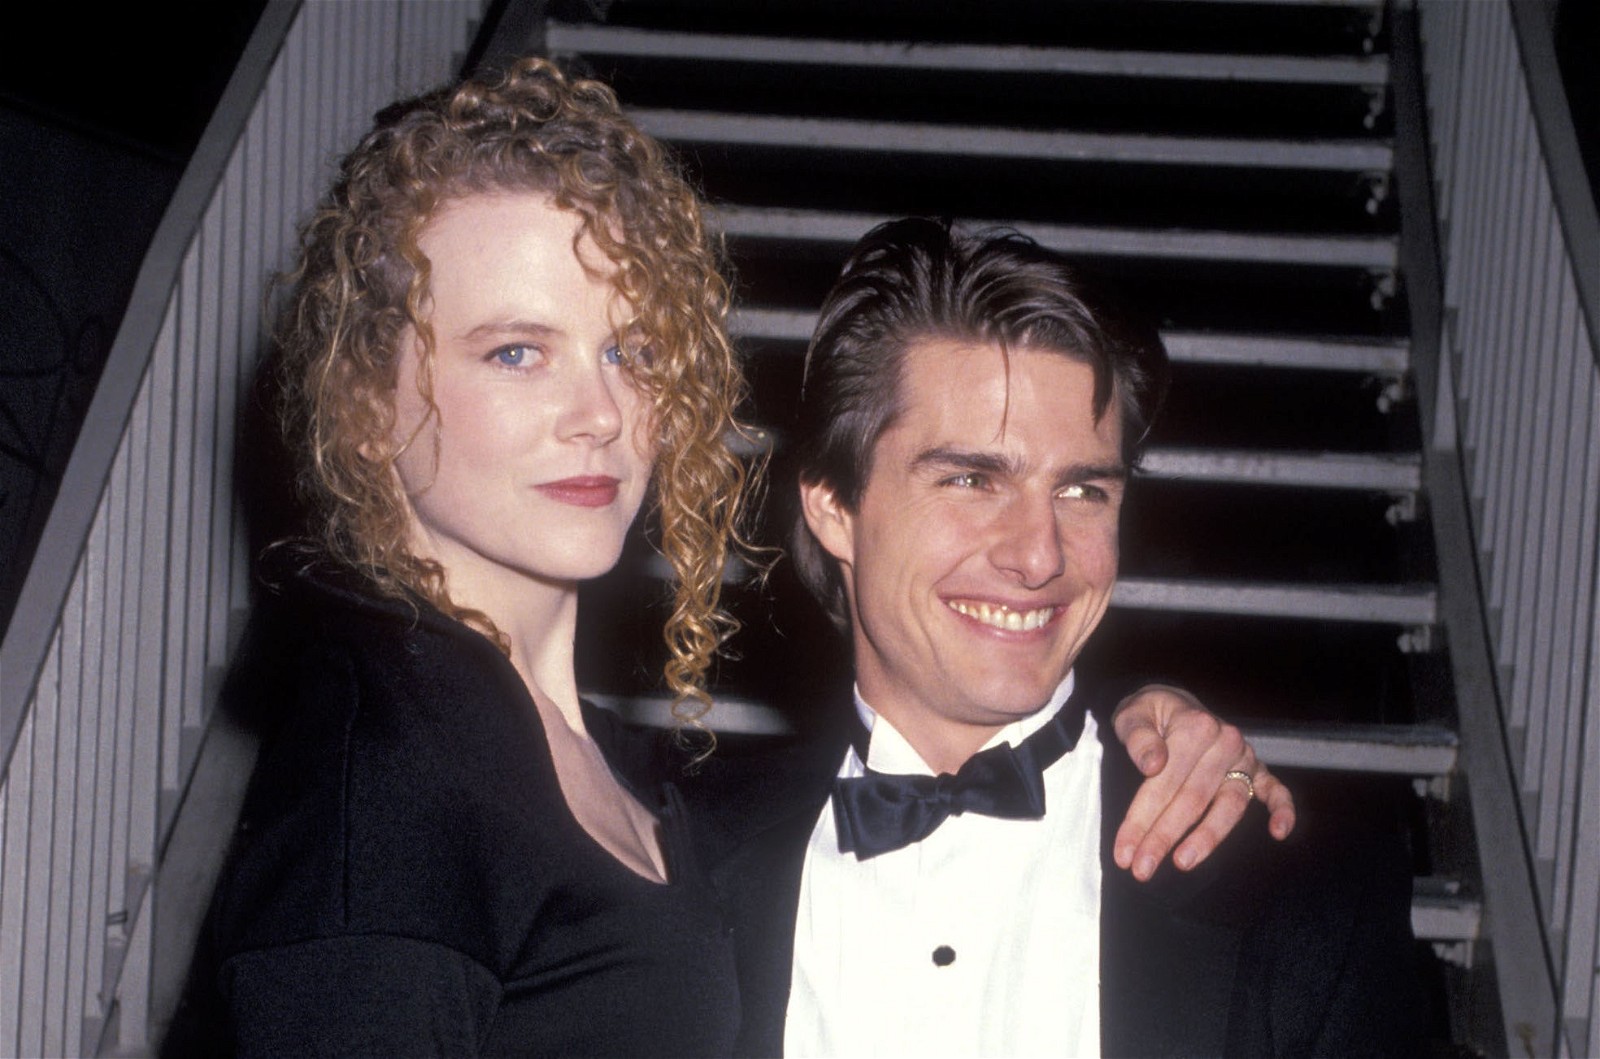 Tom Cruise with Nicole Kidman